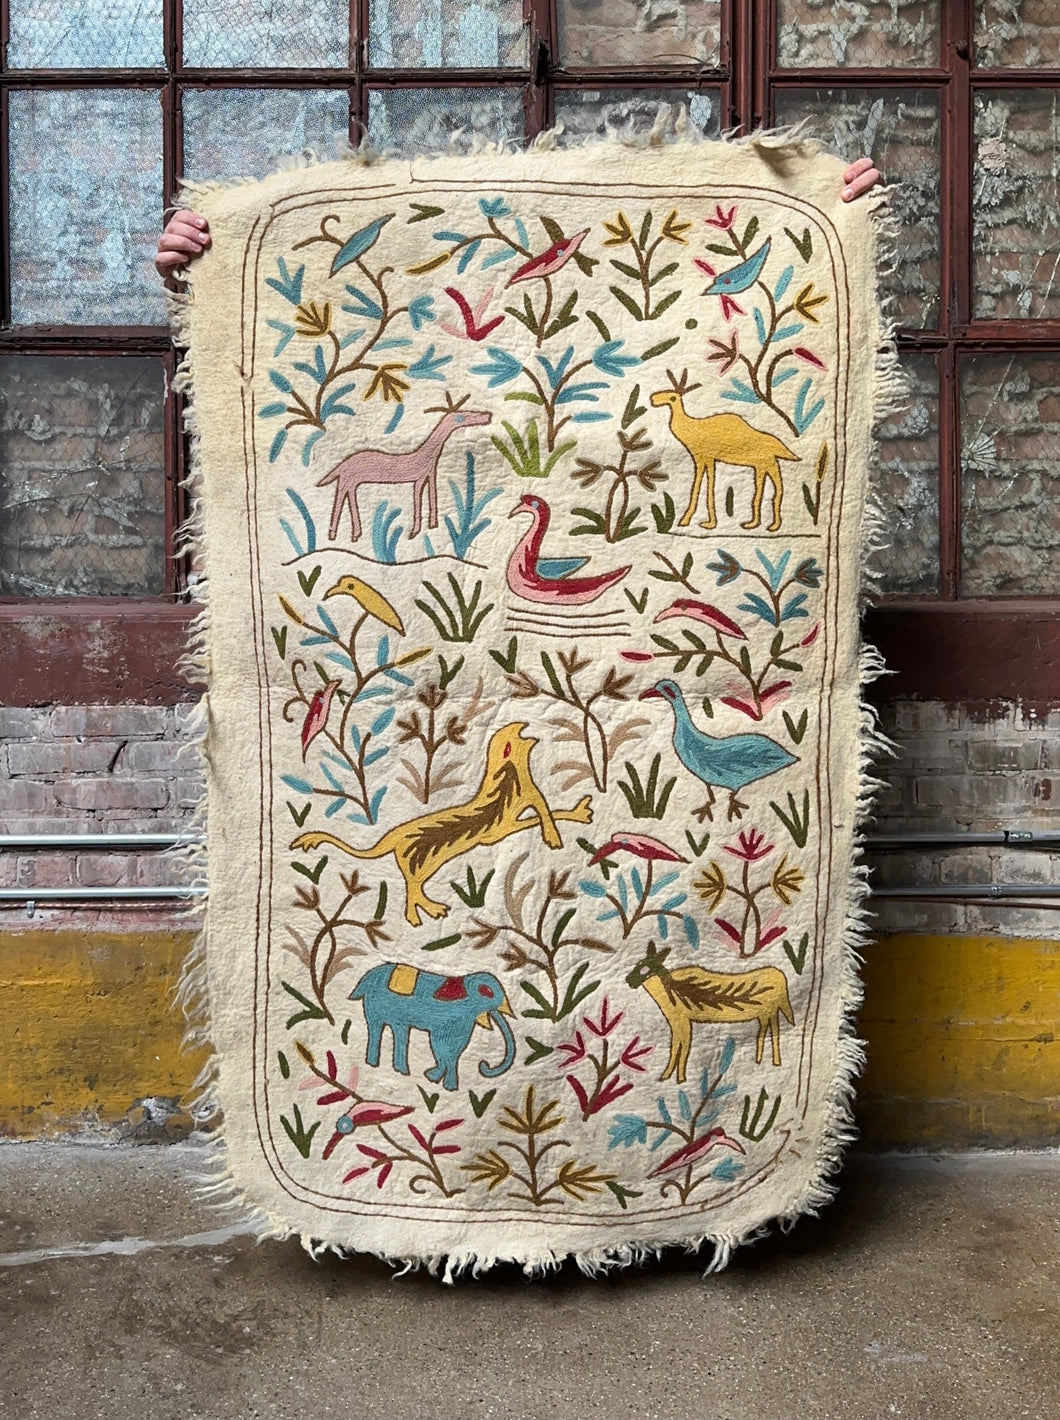 Boiled Alpaca Wool Tapestry / Area Rug Folk Art